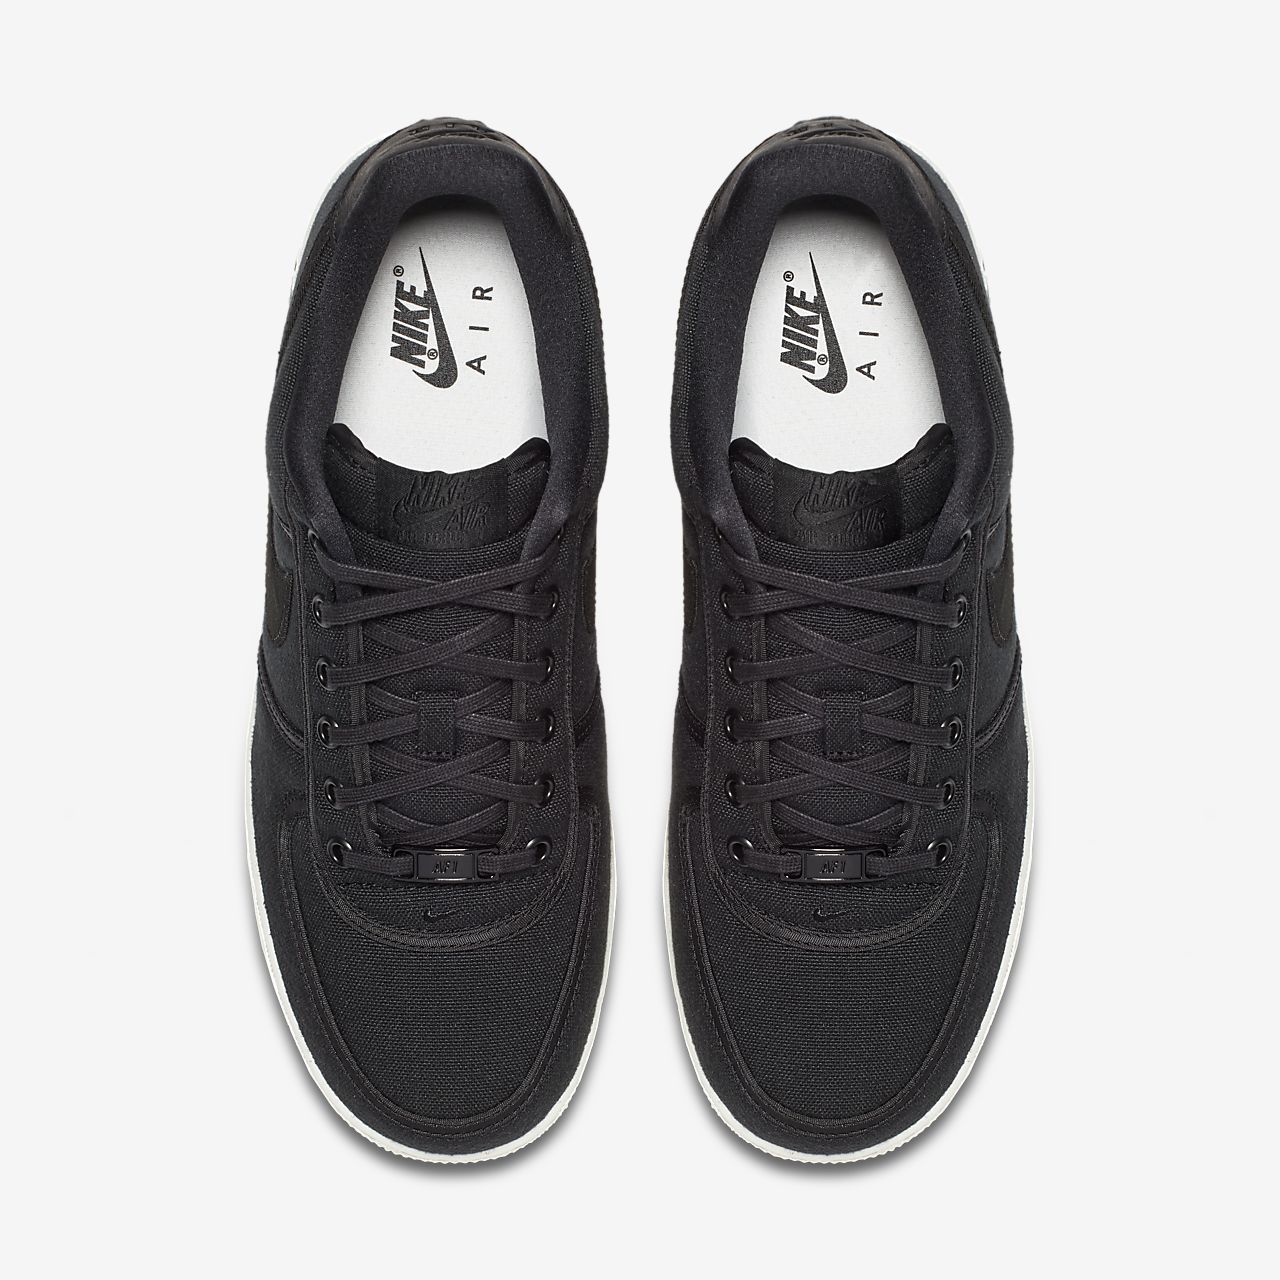 Nike Air Force 1 Low Retro QS - Sneakers - Sort/Hvide | DK-89247